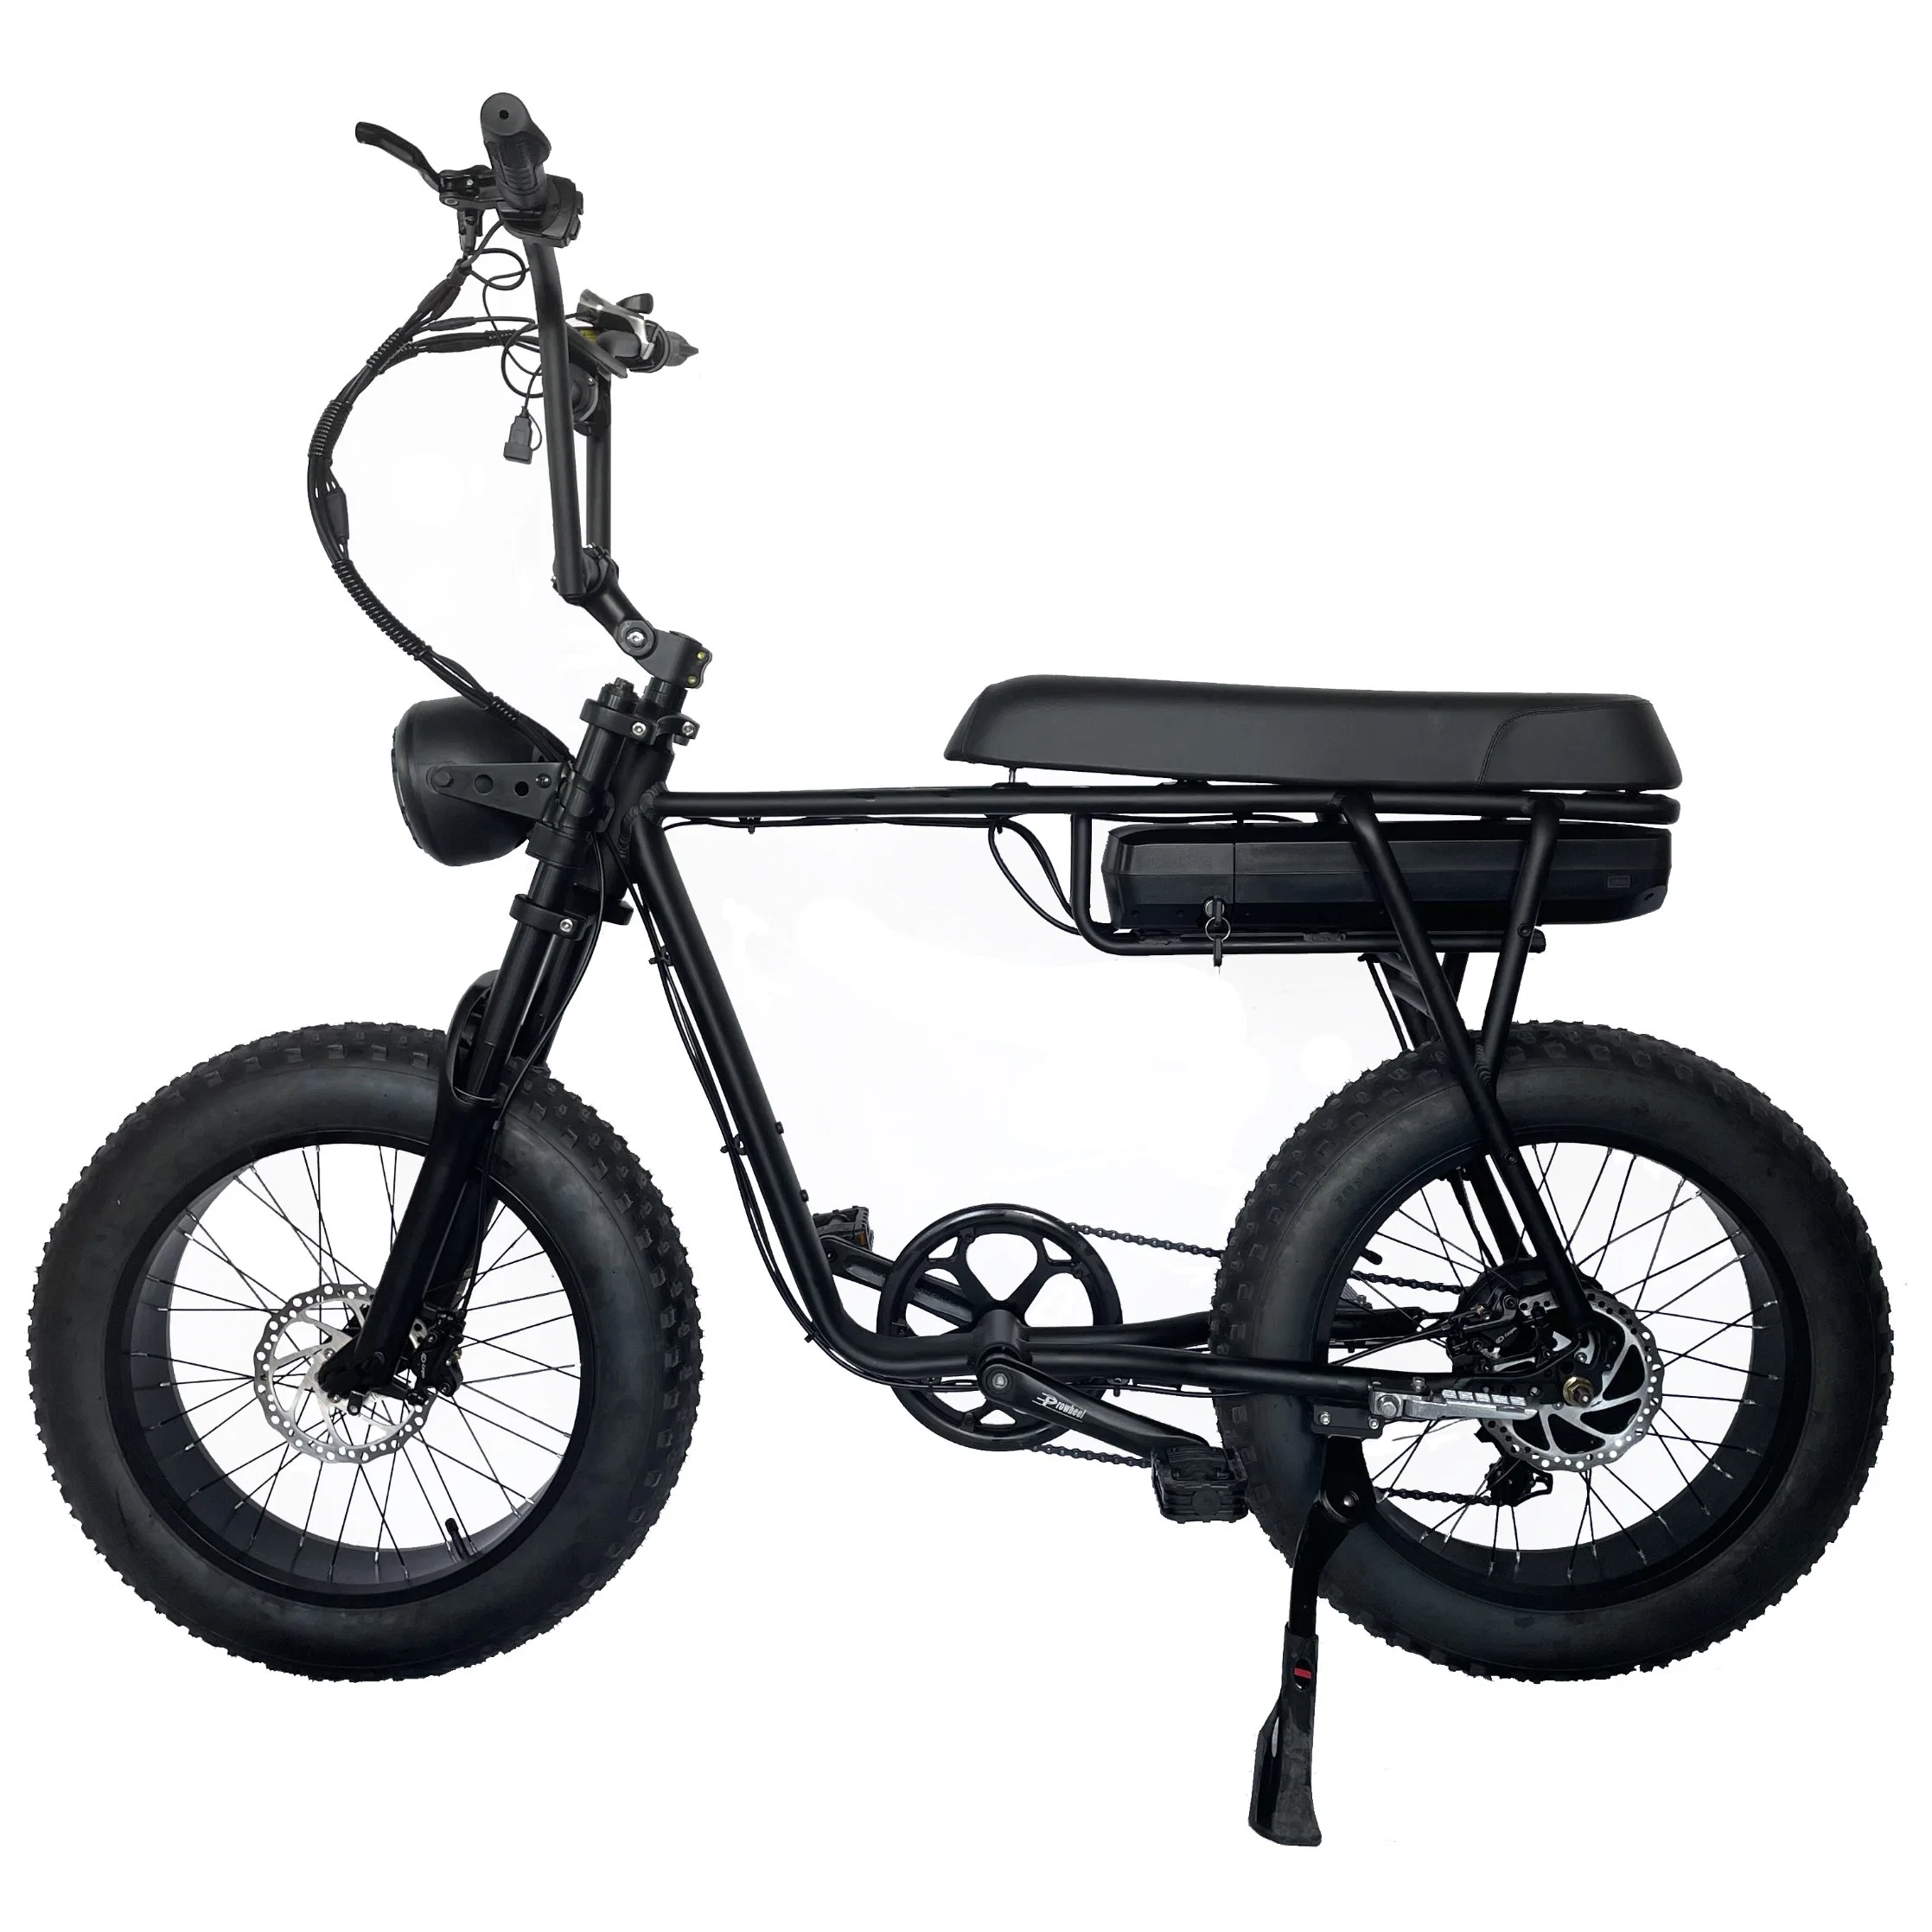 ATV Vélo électrique 750W 1000W Moteur 48V 20 pouces Pneu gras Vélo électrique longue portée hors route Affichage MID Drive Moto Frein hydraulique Vélo électrique.